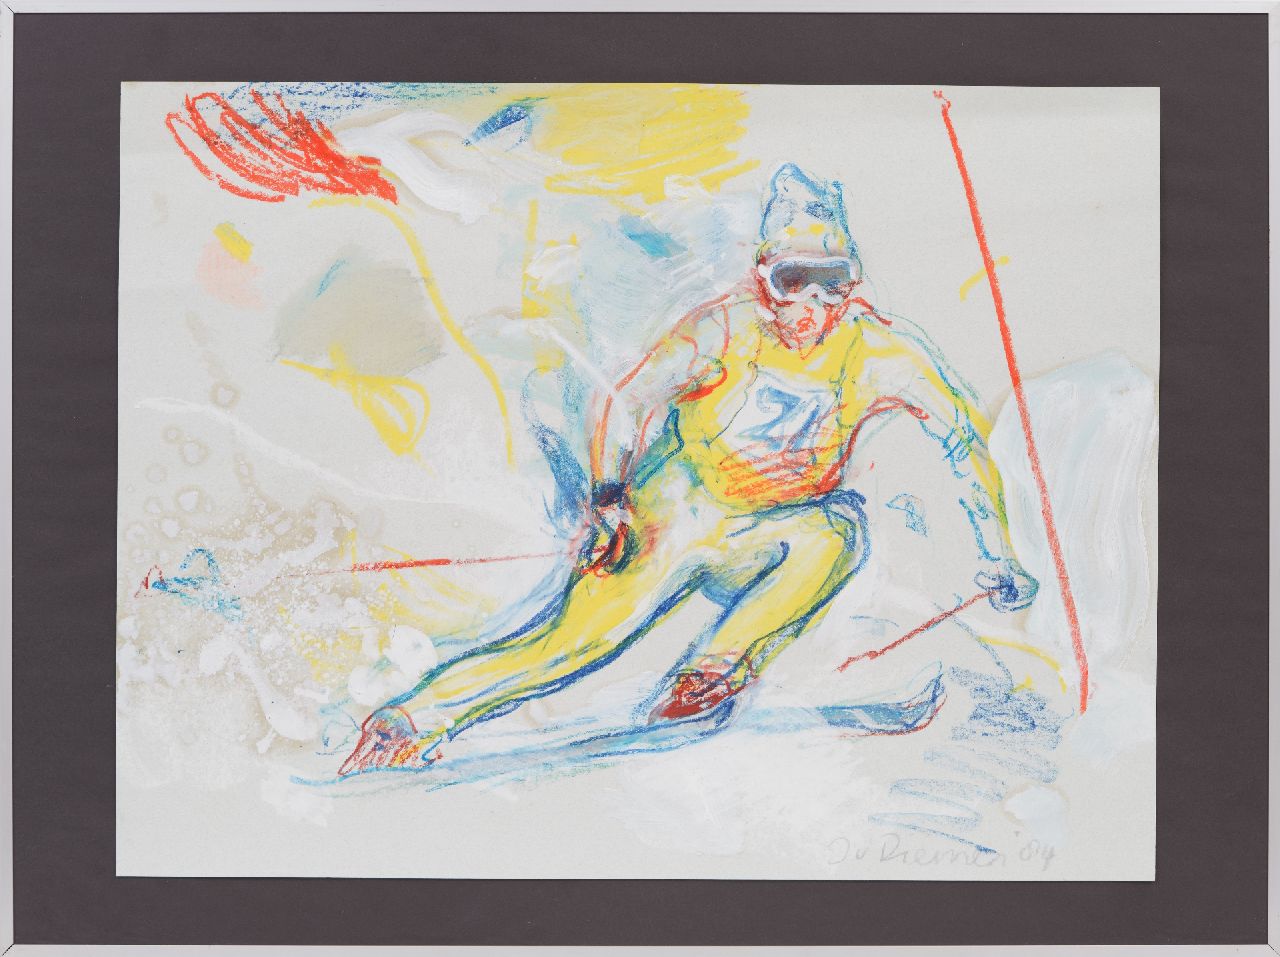 Diemen J. van | Jan van Diemen, Slalom skiër, gouache en krijt op papier 50,0 x 65,0 cm, gesigneerd rechtsonder en gedateerd '84